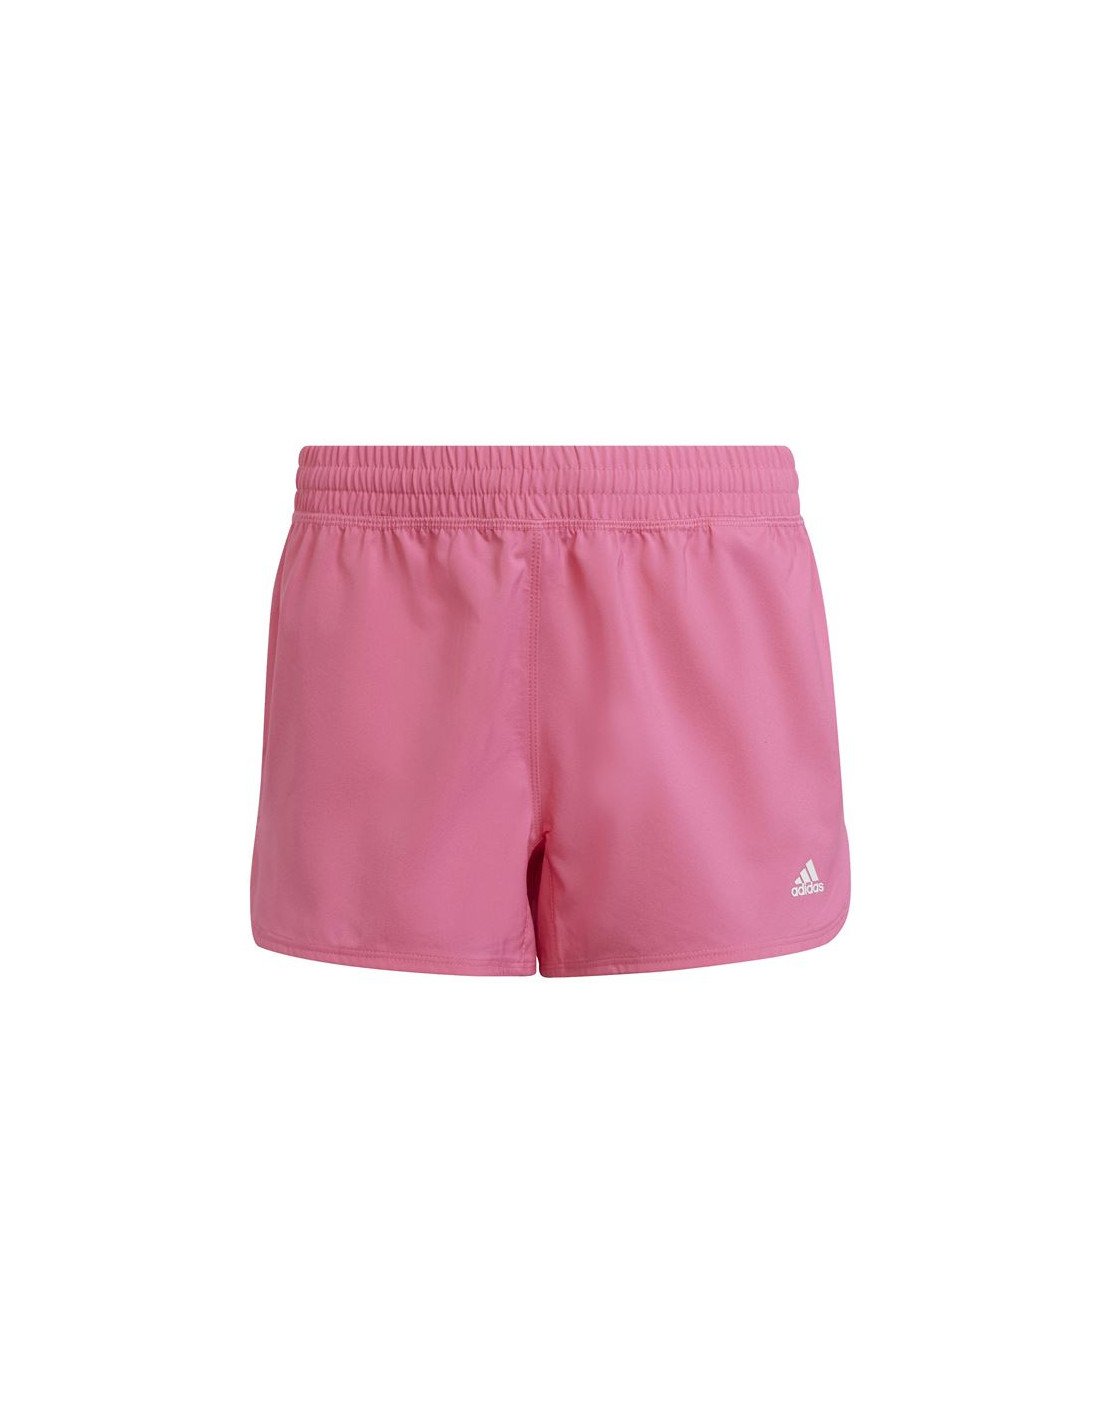 Pantalones de boxeo adidas pacer aeroready sport niña pink